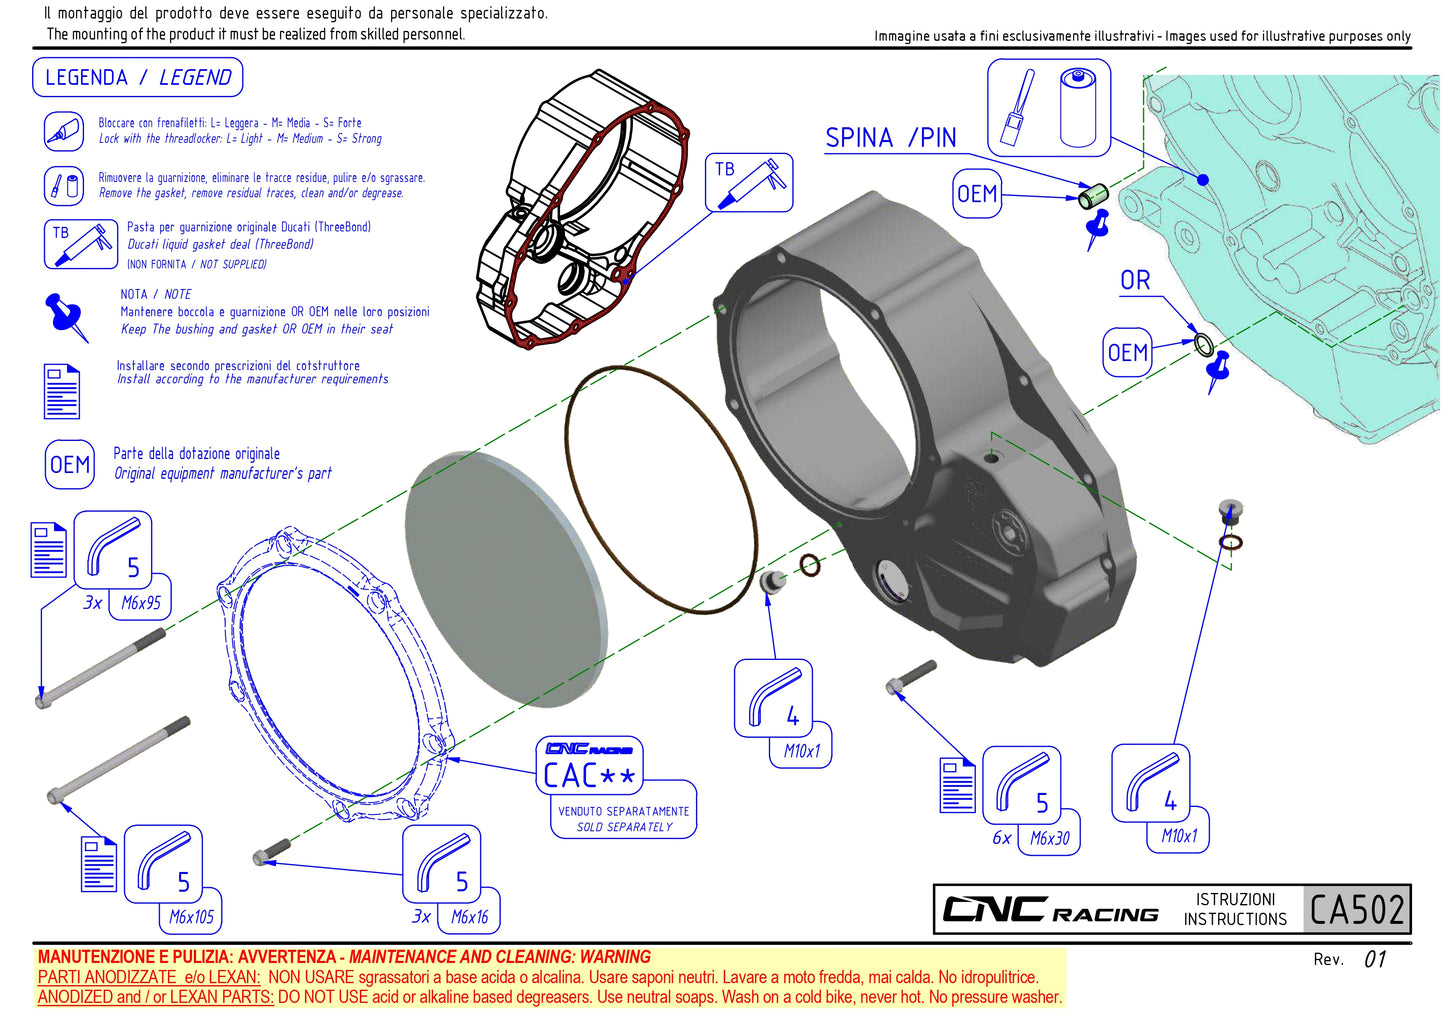 CNC Racing Ducati Clear Wet Clutch Cover [Ducati]